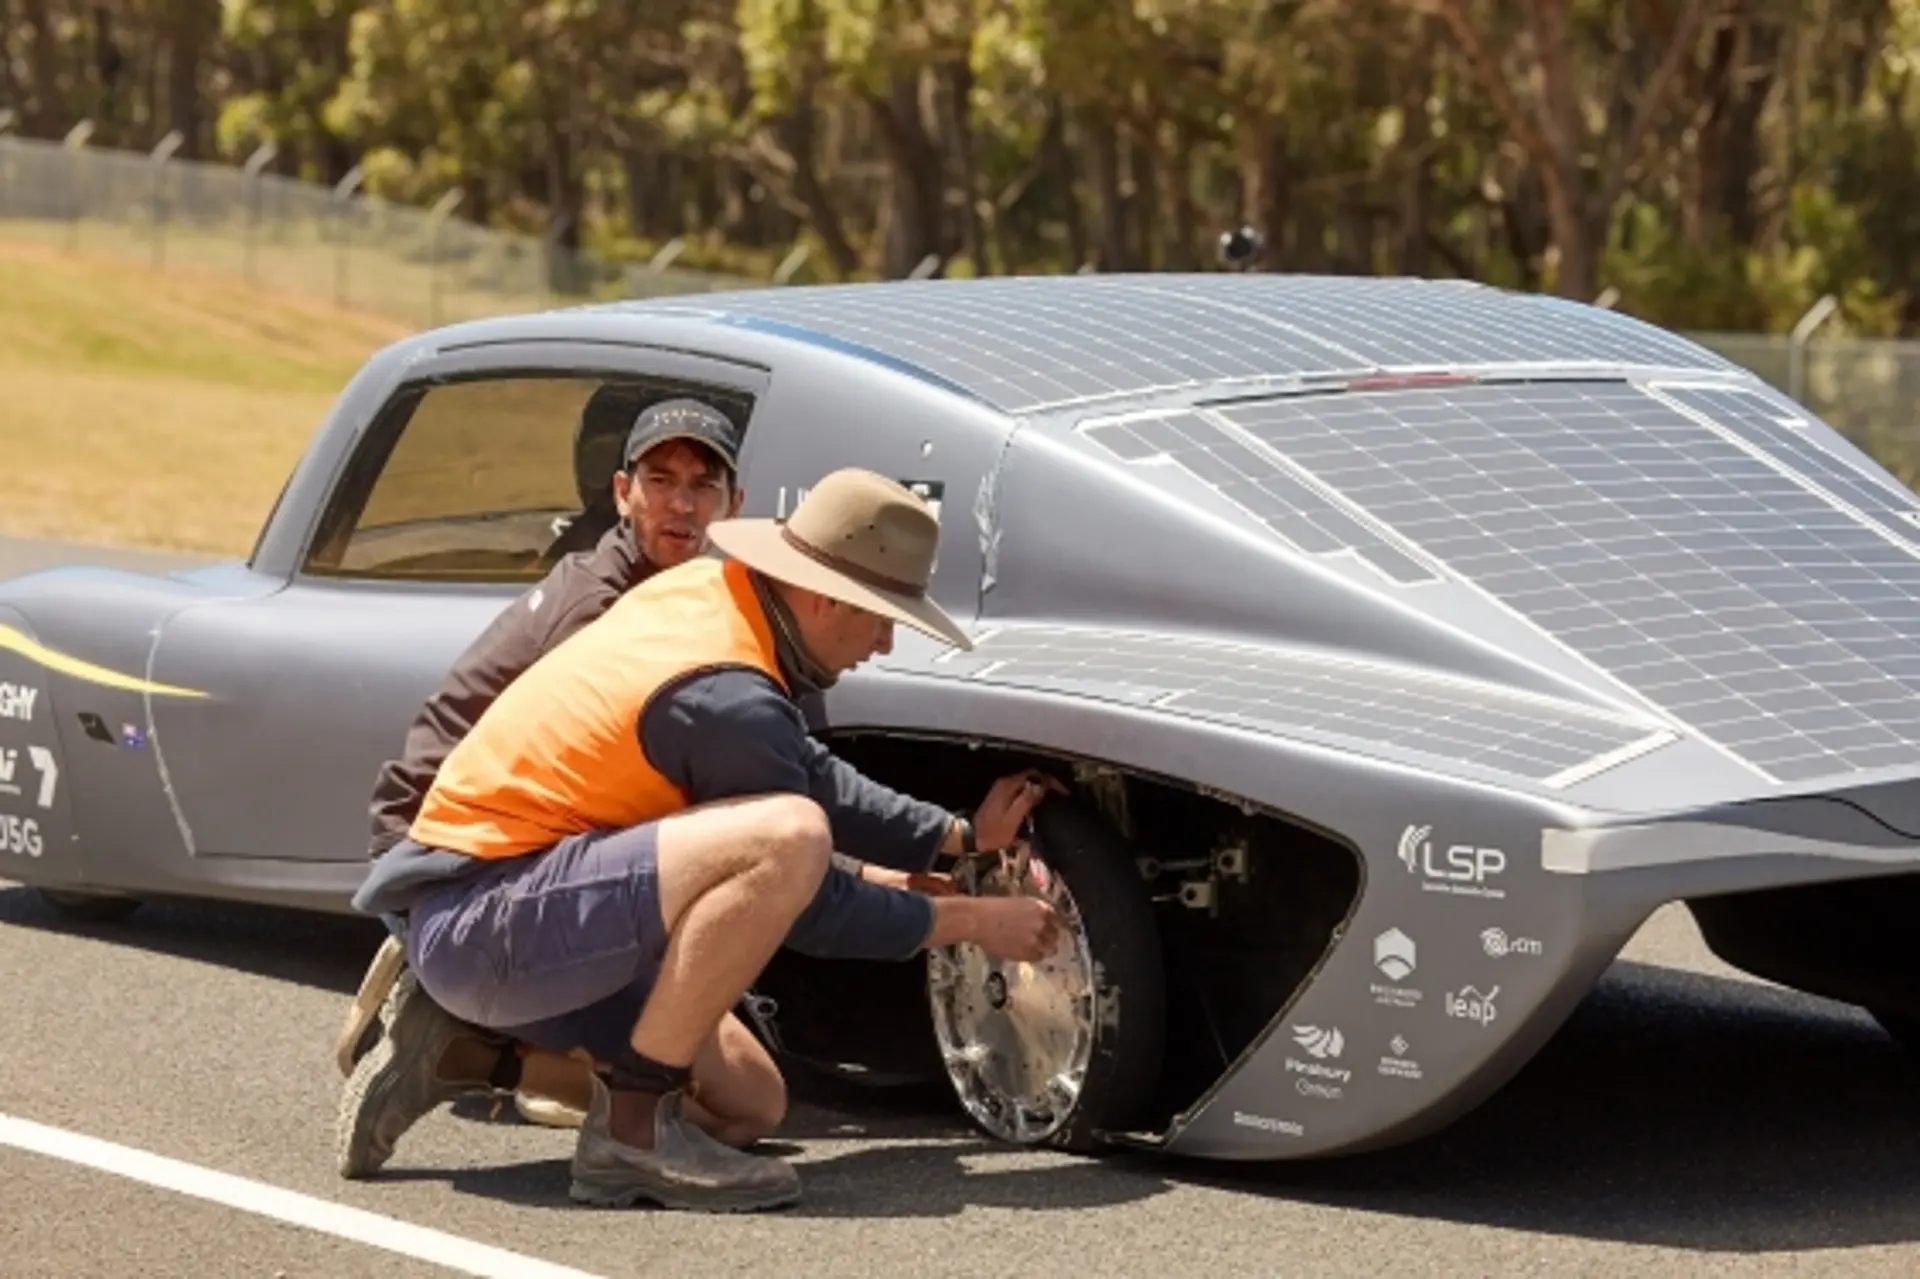 Sunswift 7 – самый быстрый в мире электромобиль на солнечных батареях, способный проехать более 1000 км без подзарядки